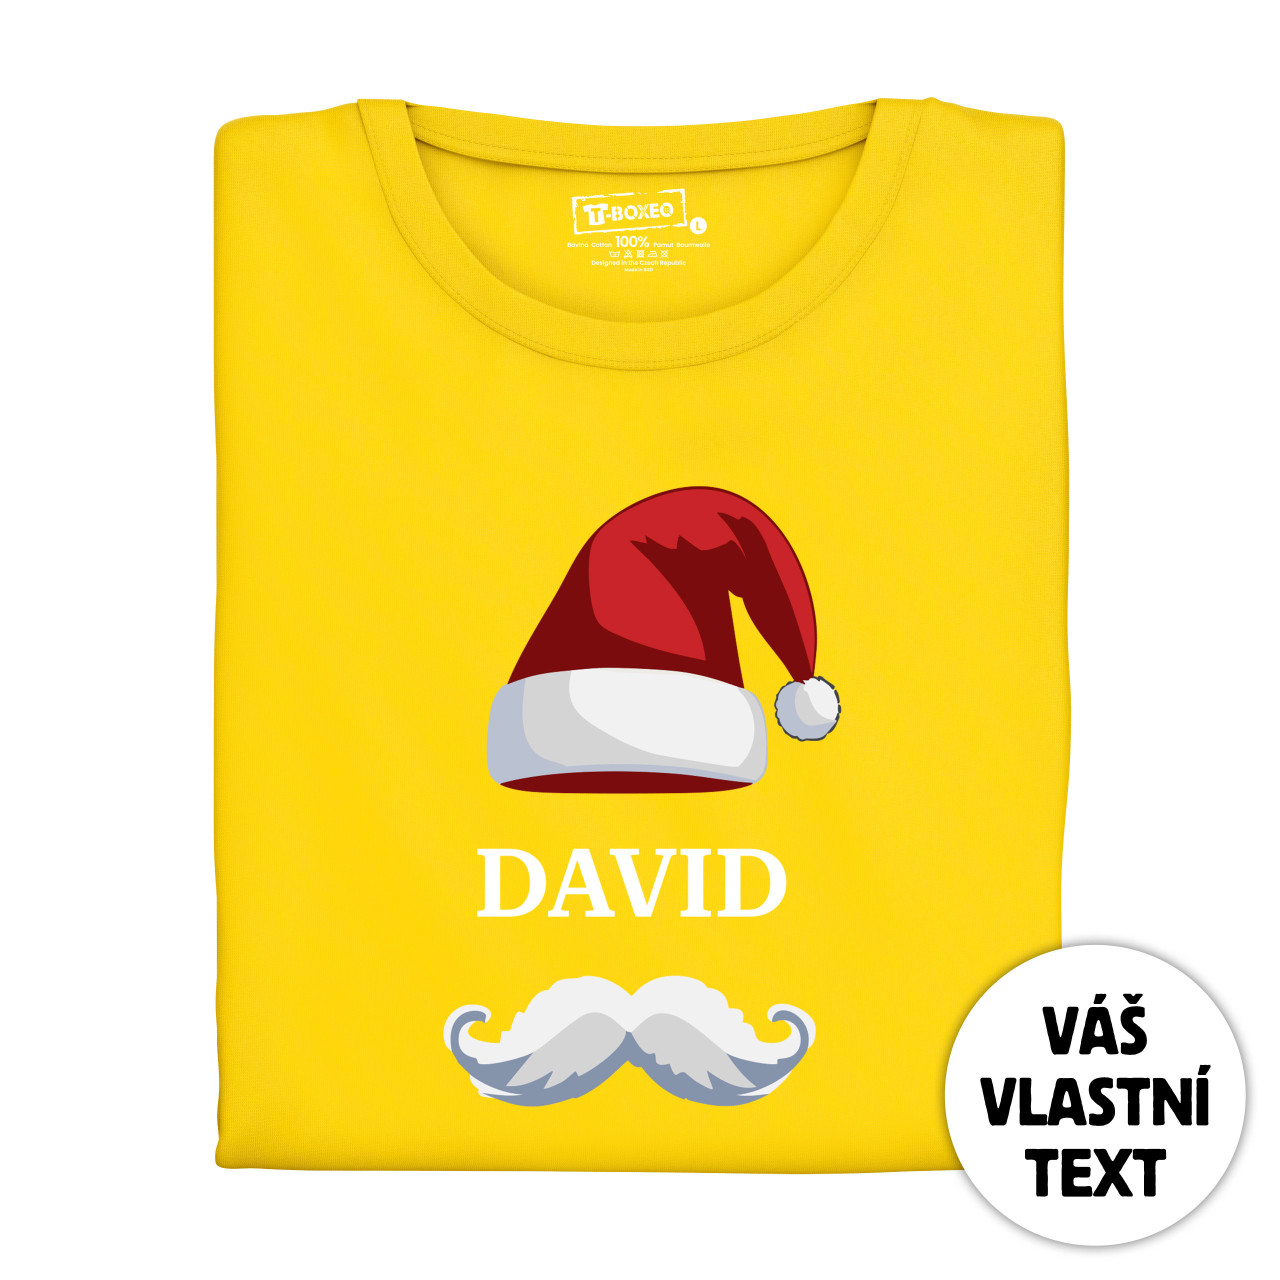 Pánské tričko s potiskem “Vánoční čepice s knírem” a jménem